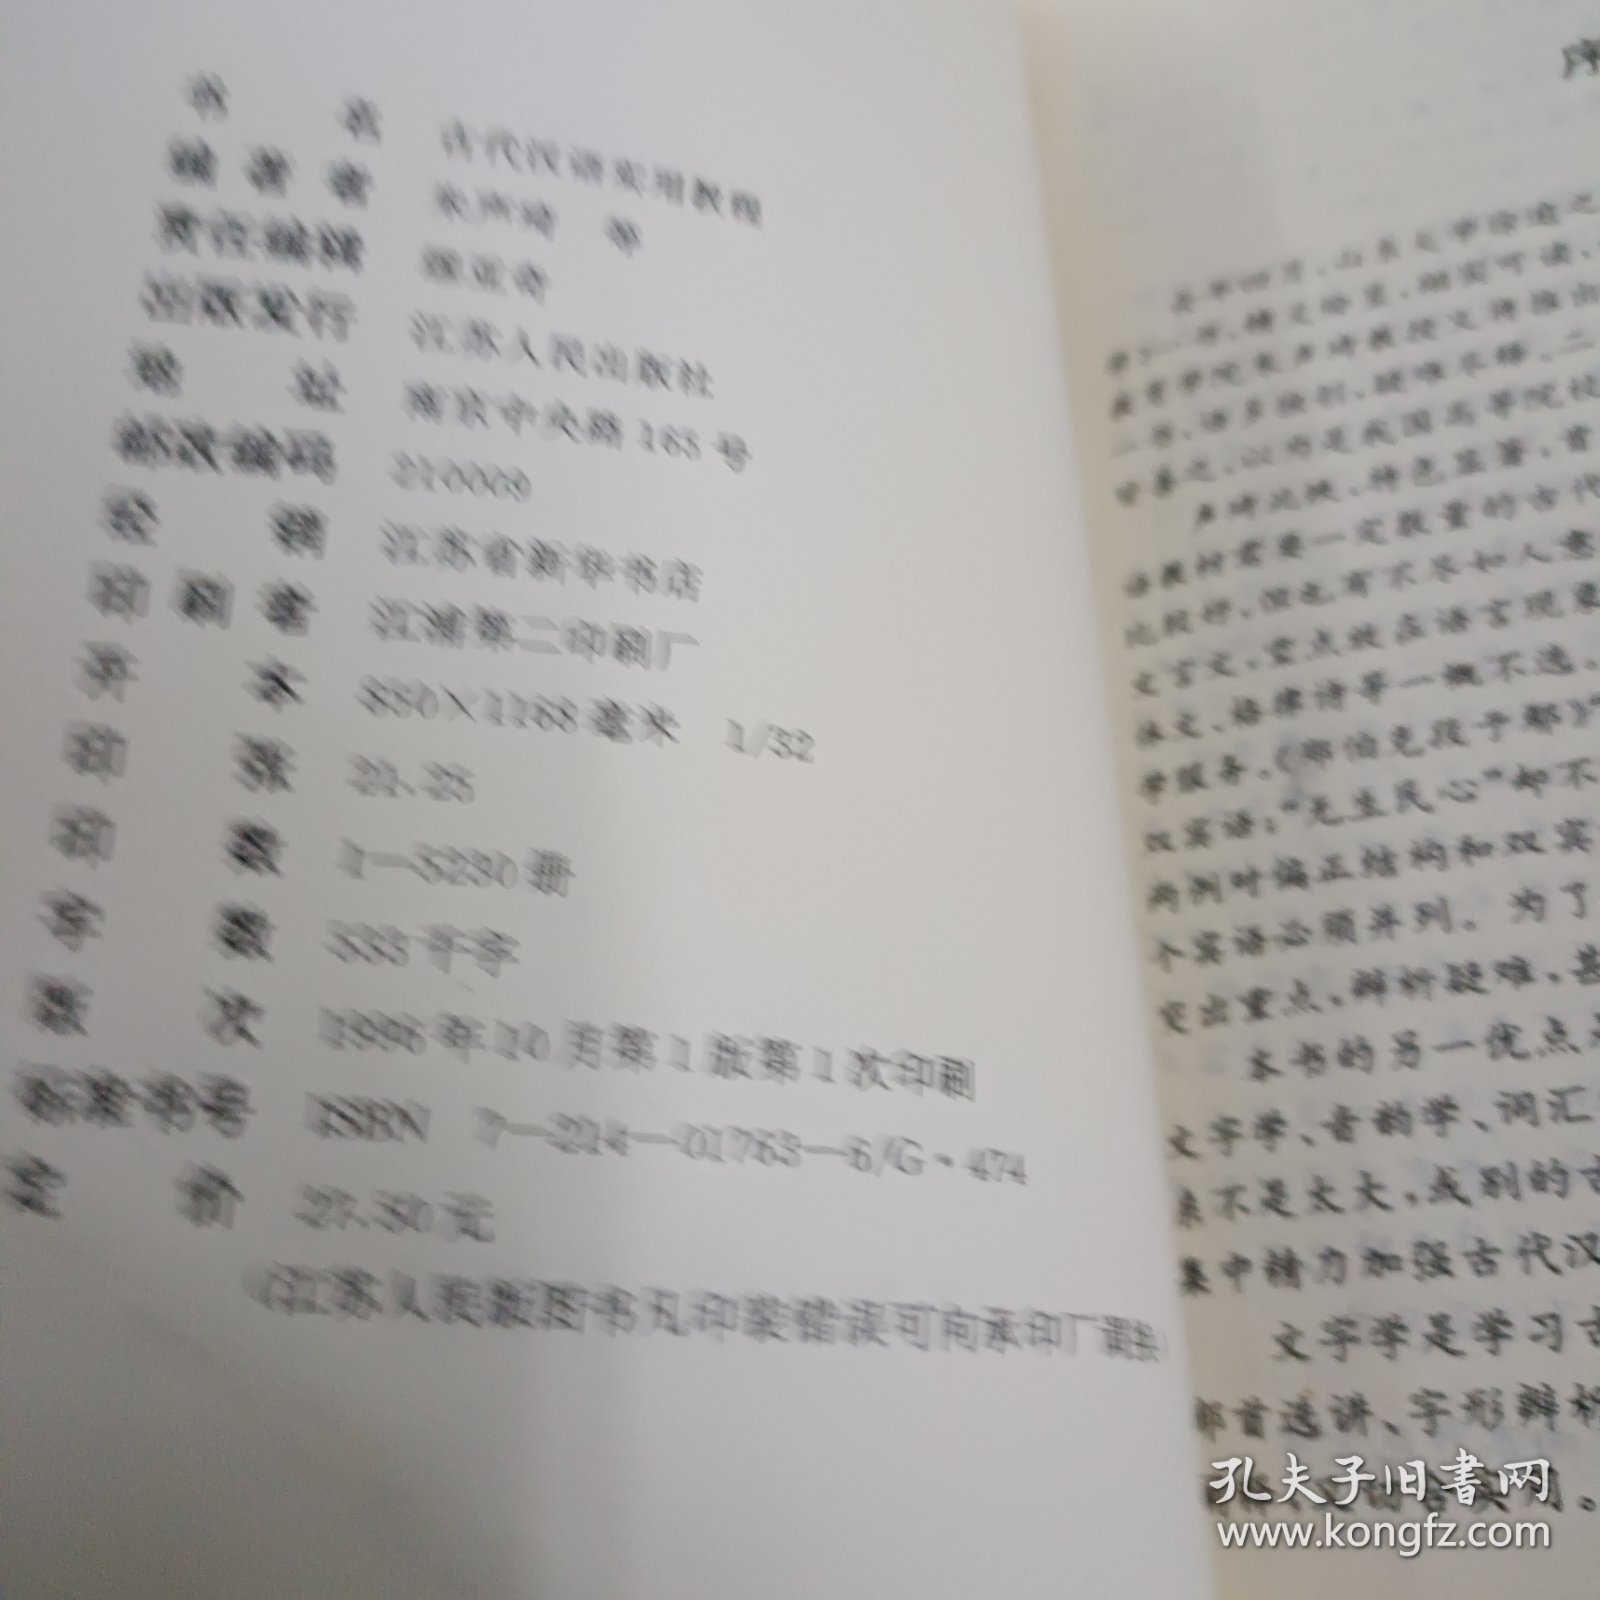 古代汉语实用教程